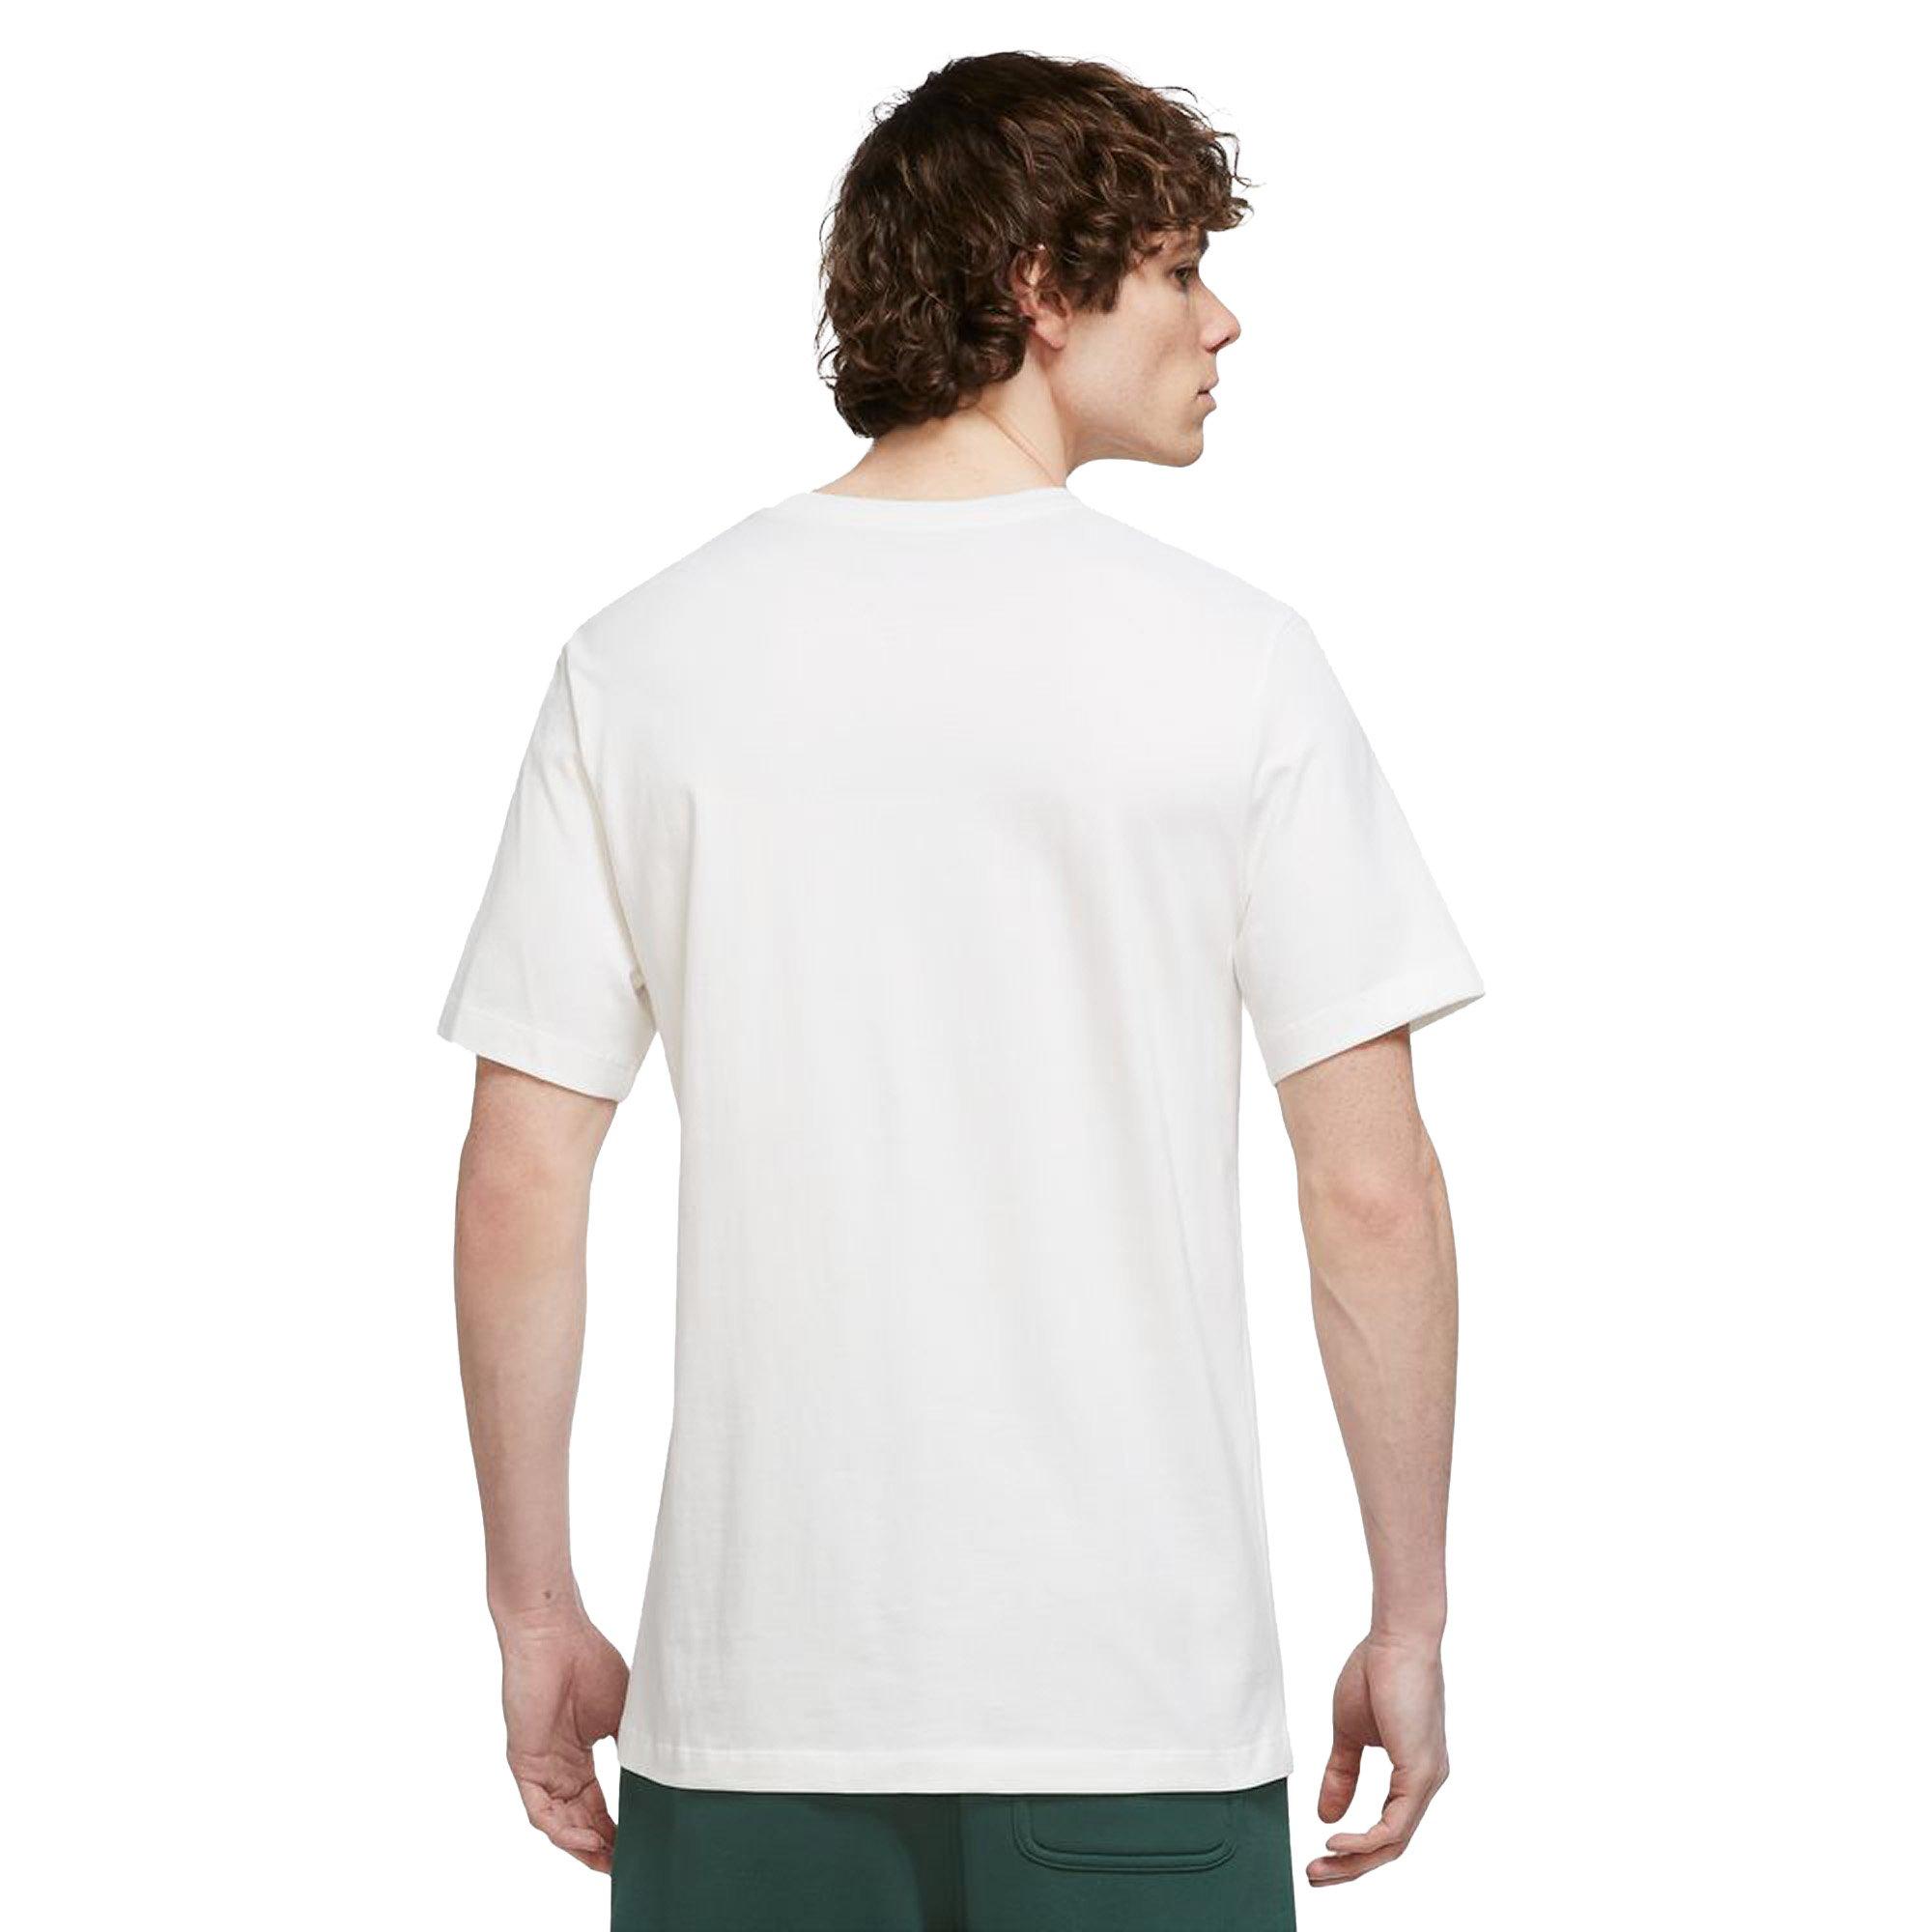 Jordan Men's Air T-Shirt-Black/White - Hibbett